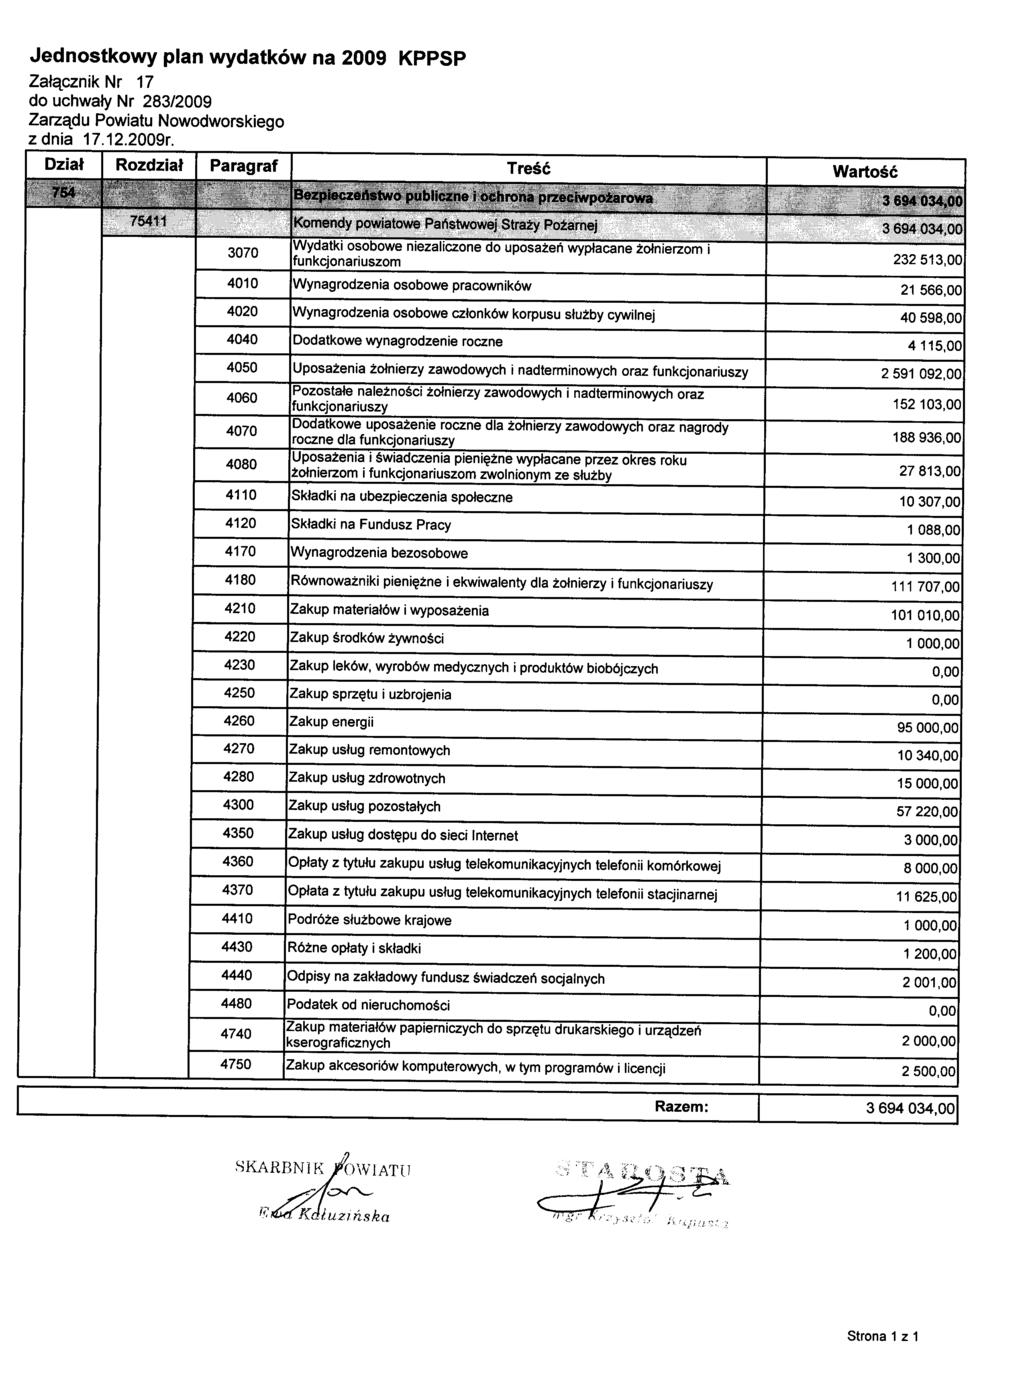 Jednostkowy plan wydatków na 2009 KPPSP Załącznik Nr 17 z dnia 17.12.2009r.